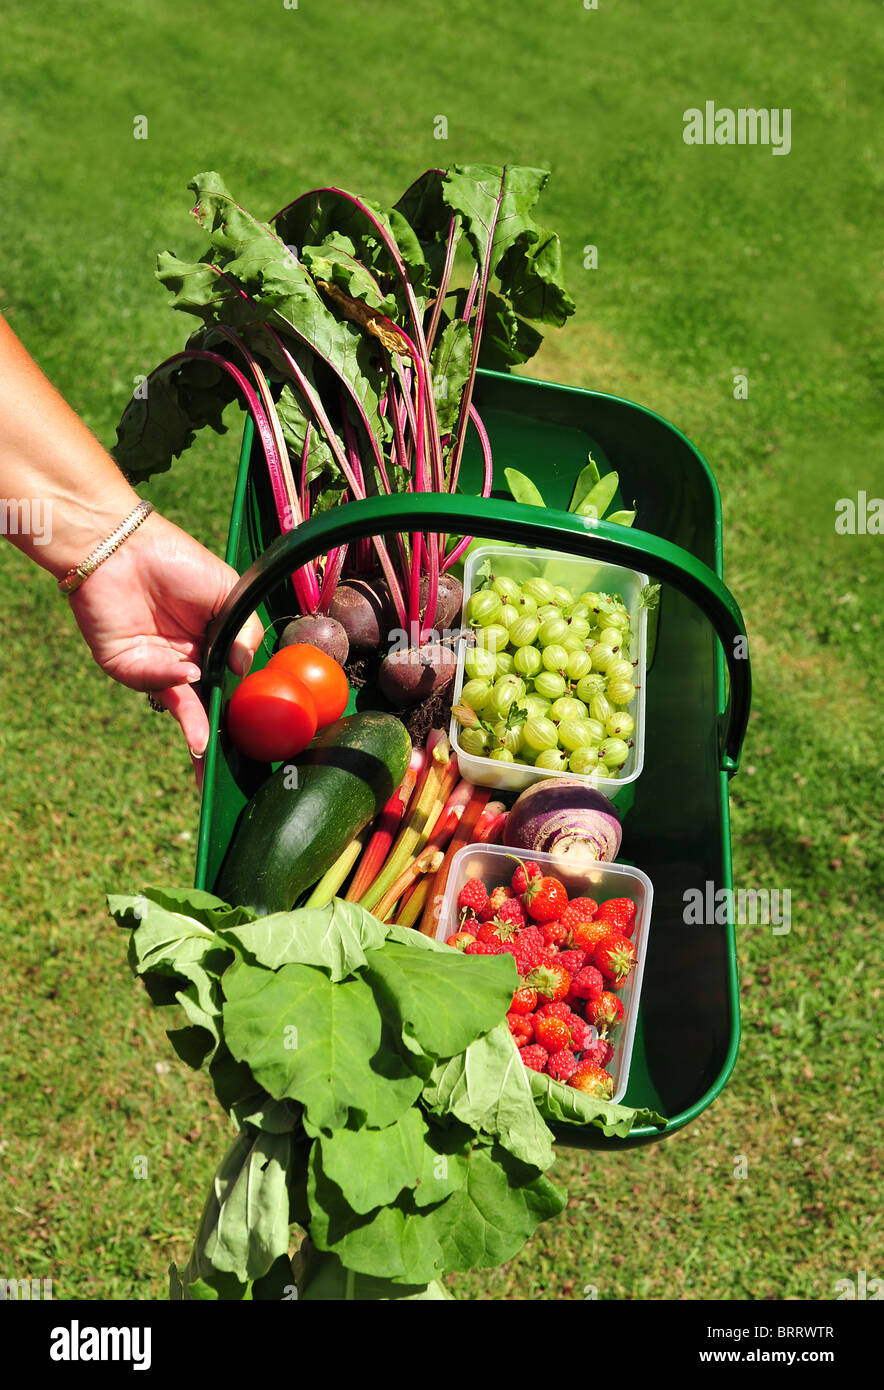 Gärtner-Hand mit Trug voll von frischem Obst und Gemüse. Stockfoto